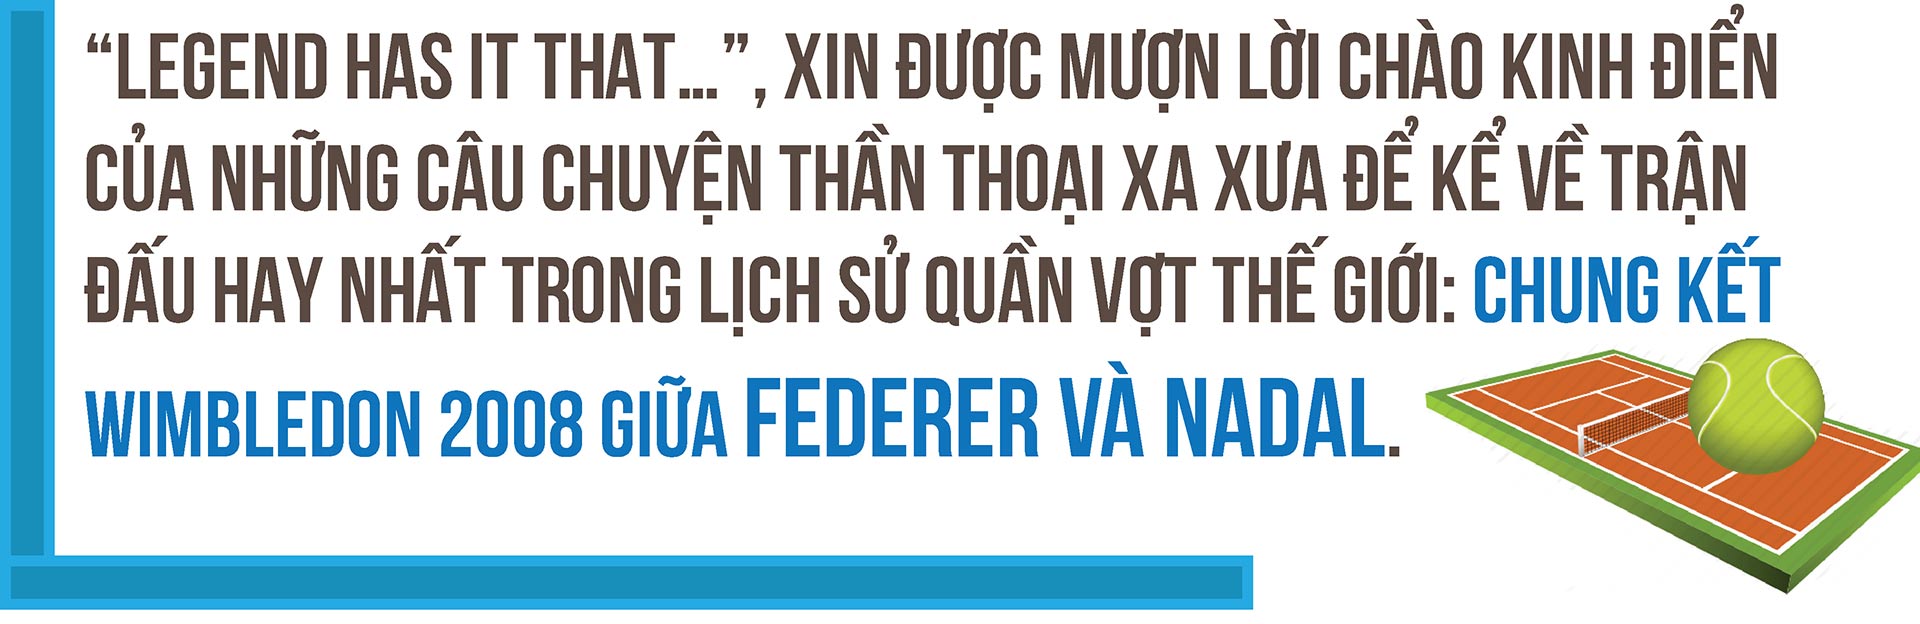 Siêu kinh điển Federer - Nadal: 10 năm trận đấu thiên niên kỷ (Chung kết Wimbledon 2008) - 2